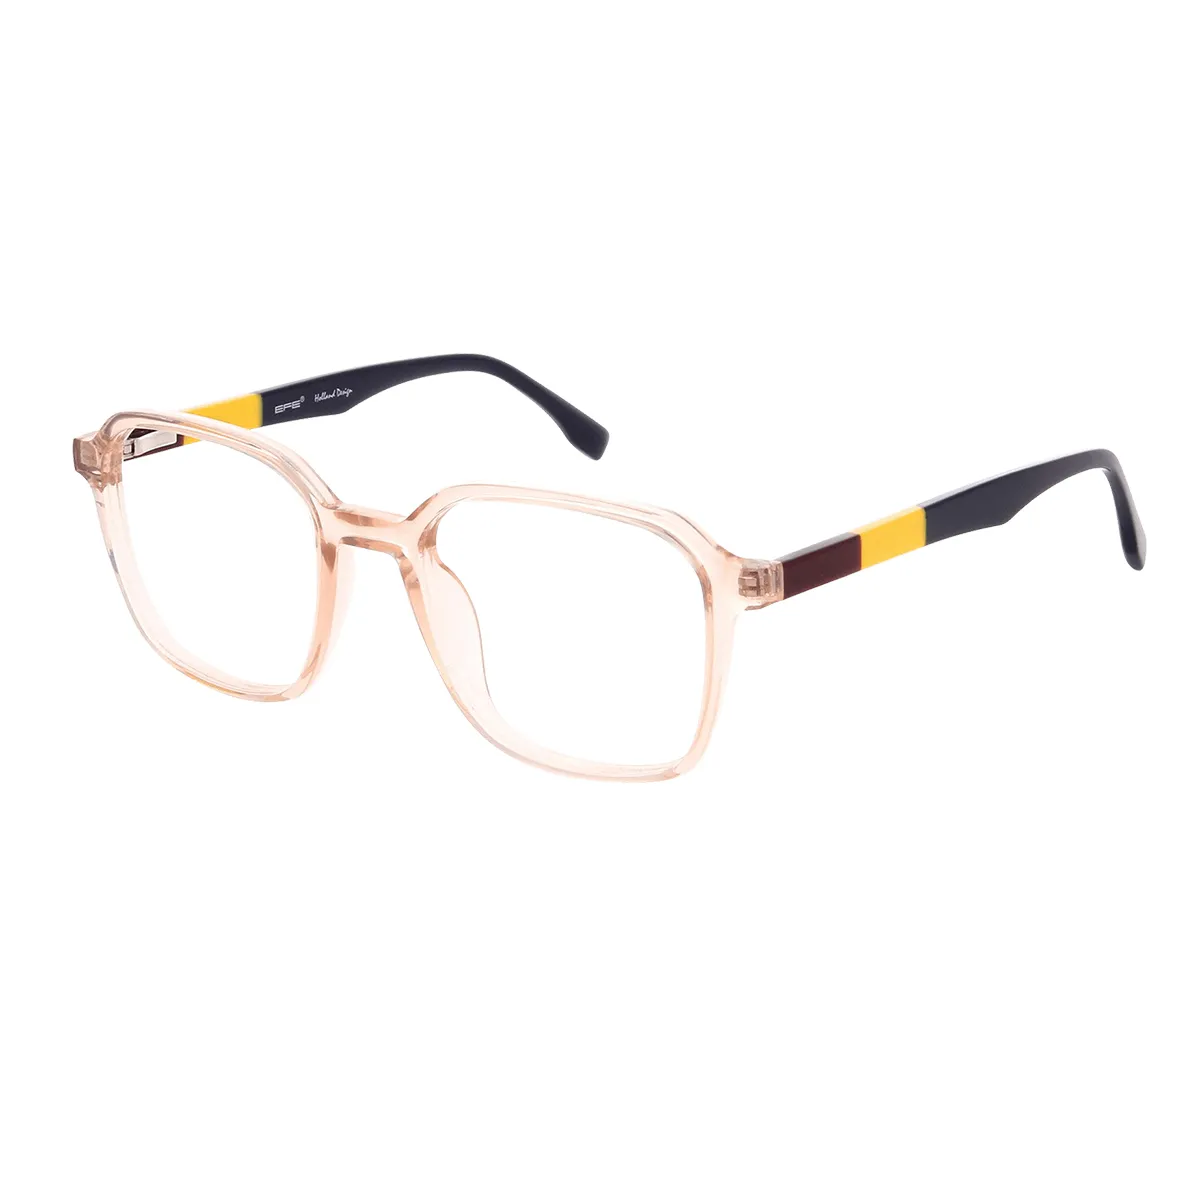 Guthrie - Square Brown Glasses for Men & Women